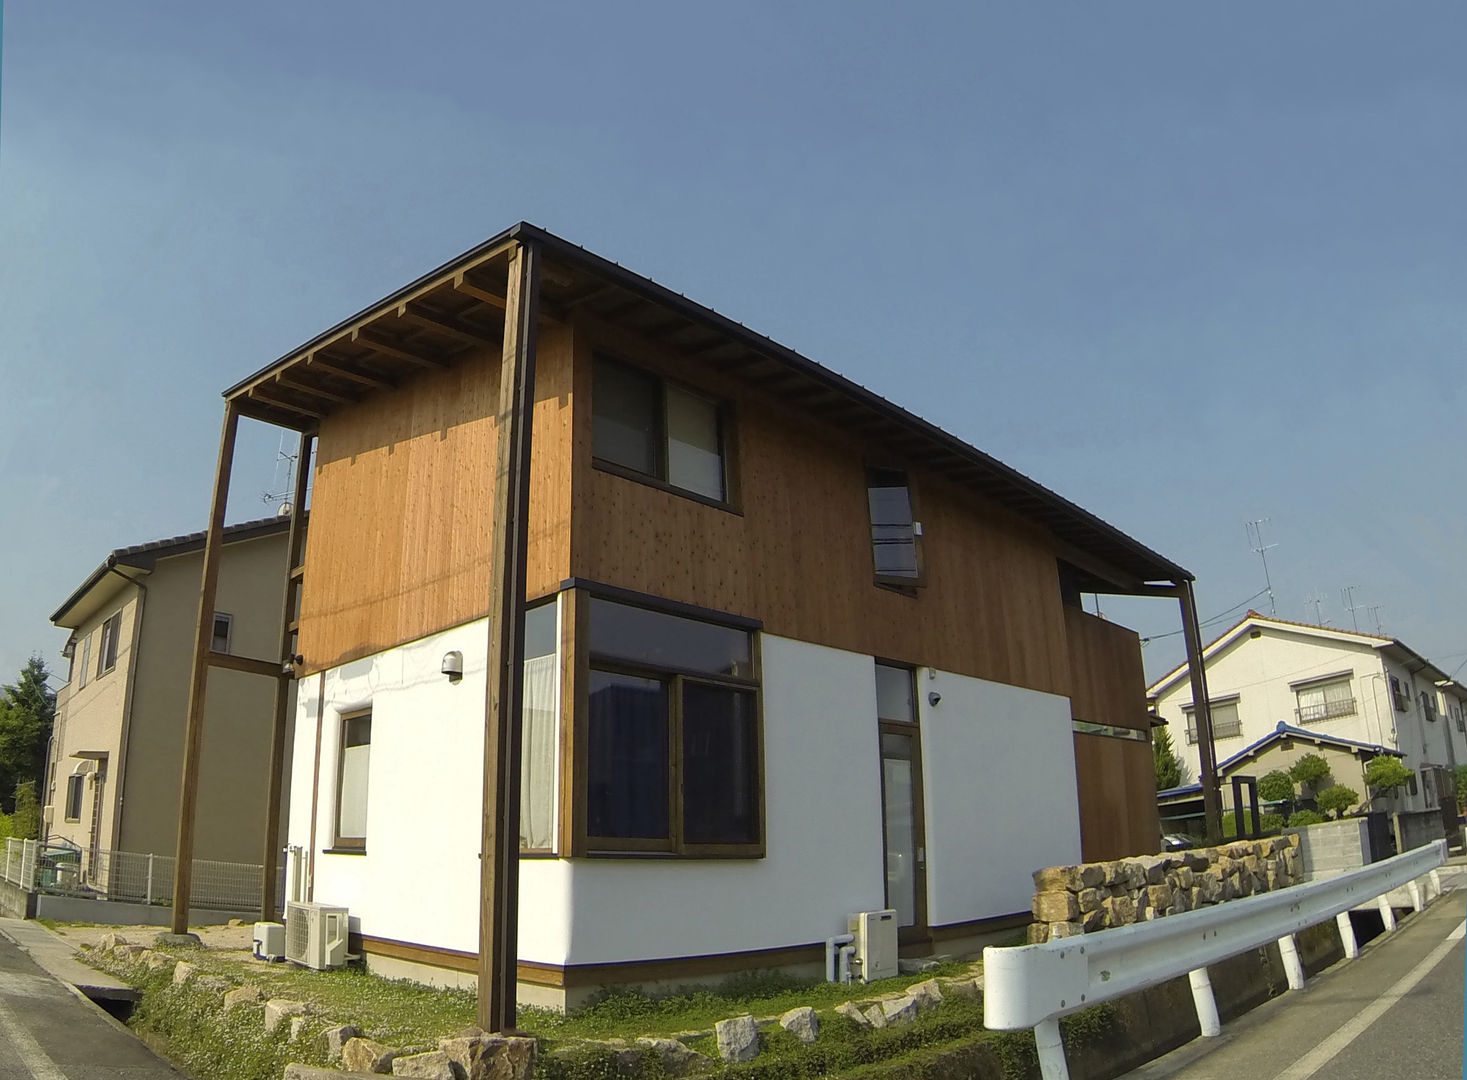 土蔵造りの家Ⅲ, Interstudio Architects & Associates Japan Interstudio Architects & Associates Japan Rustic style houses